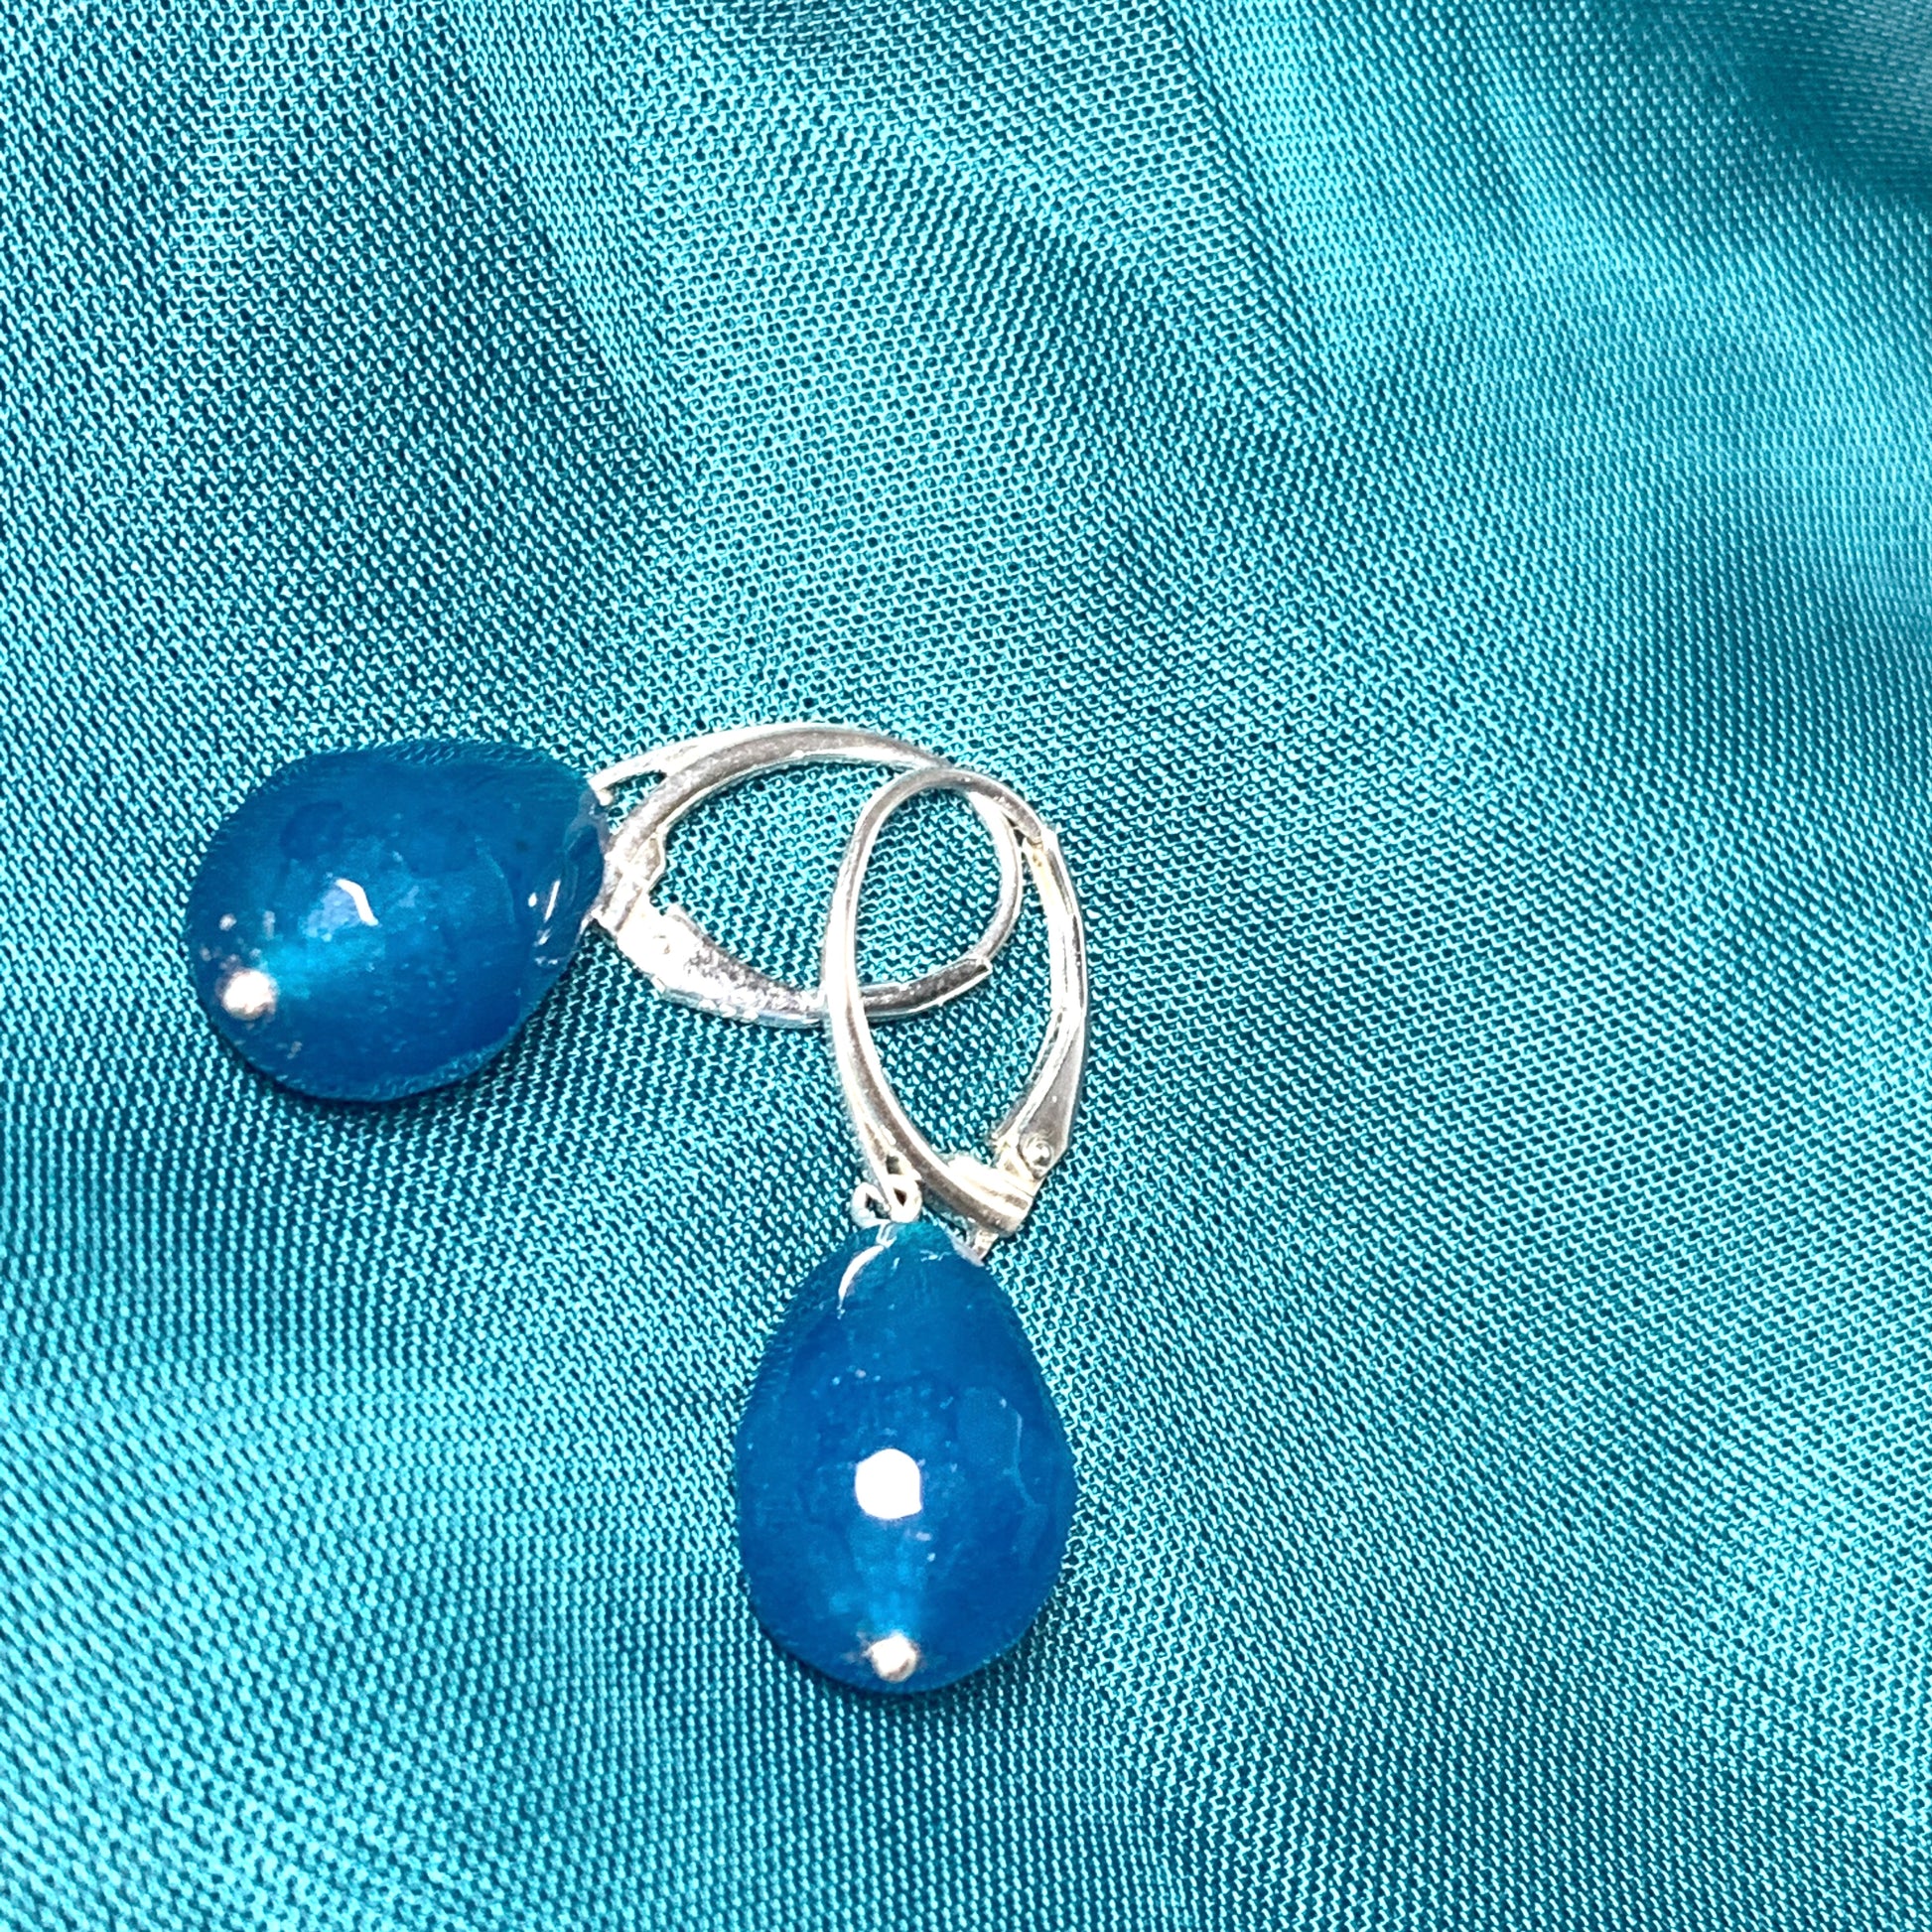 Turquoise agate teardrop shaped drop earrings